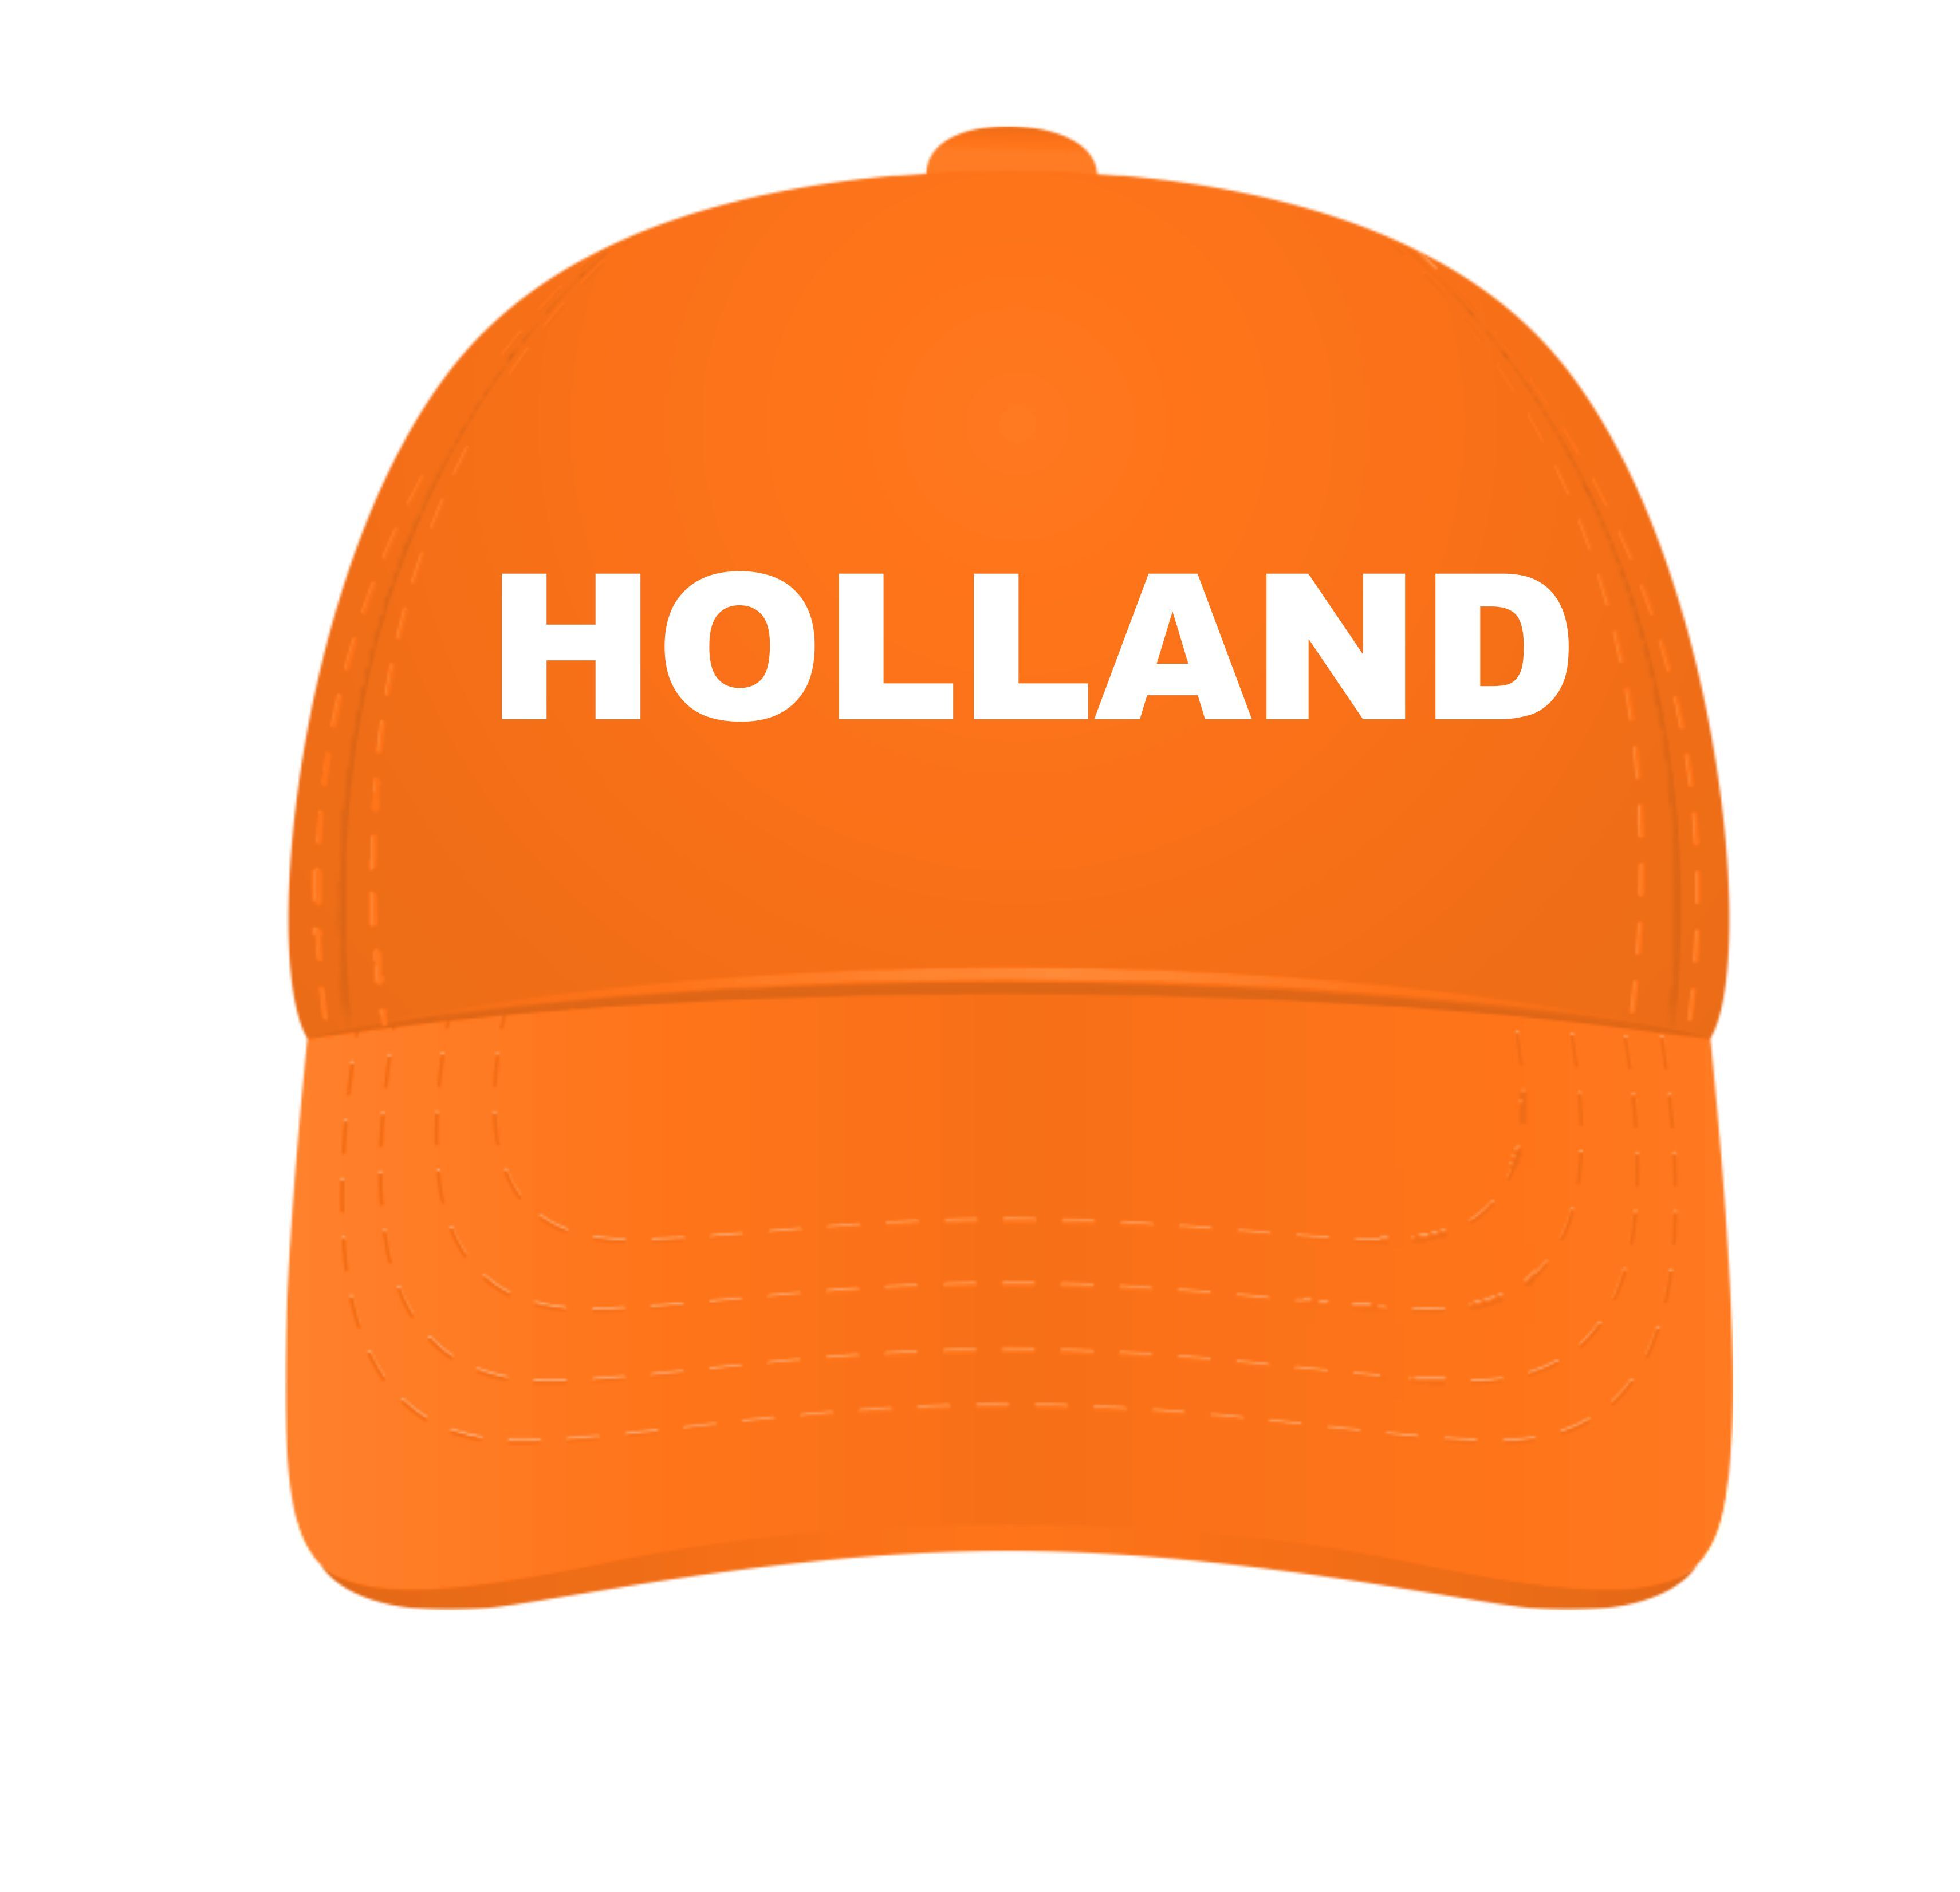 Holland cap met de tekst Holland erop gedrukt